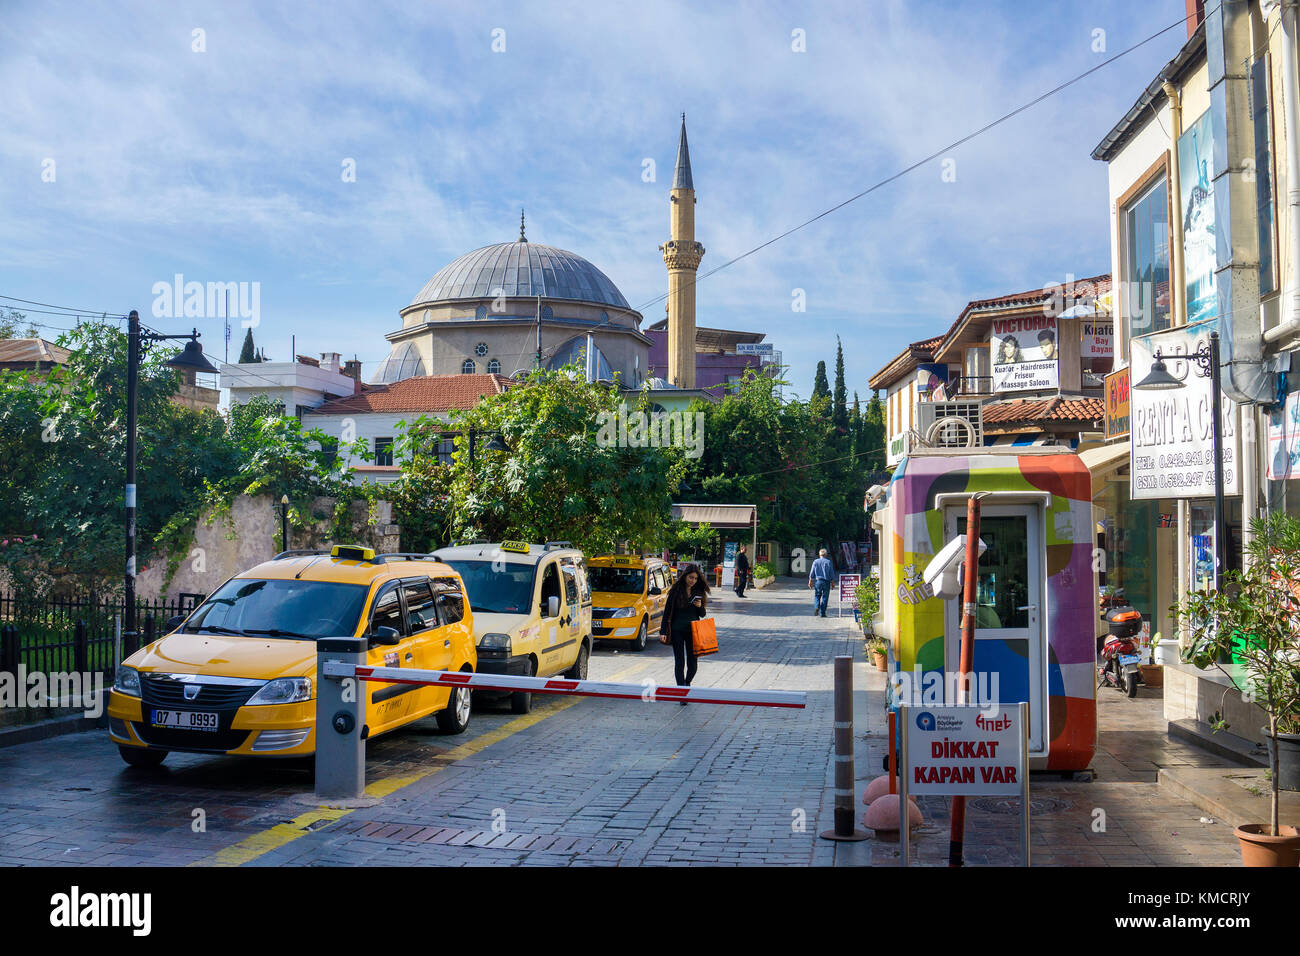 Barriere an den Zugriff auf die Altstadt Kaleici, hinter dem Tekeli Mehmet Pasa Moschee, Antalya, Türkische Riviera, Türkei Stockfoto